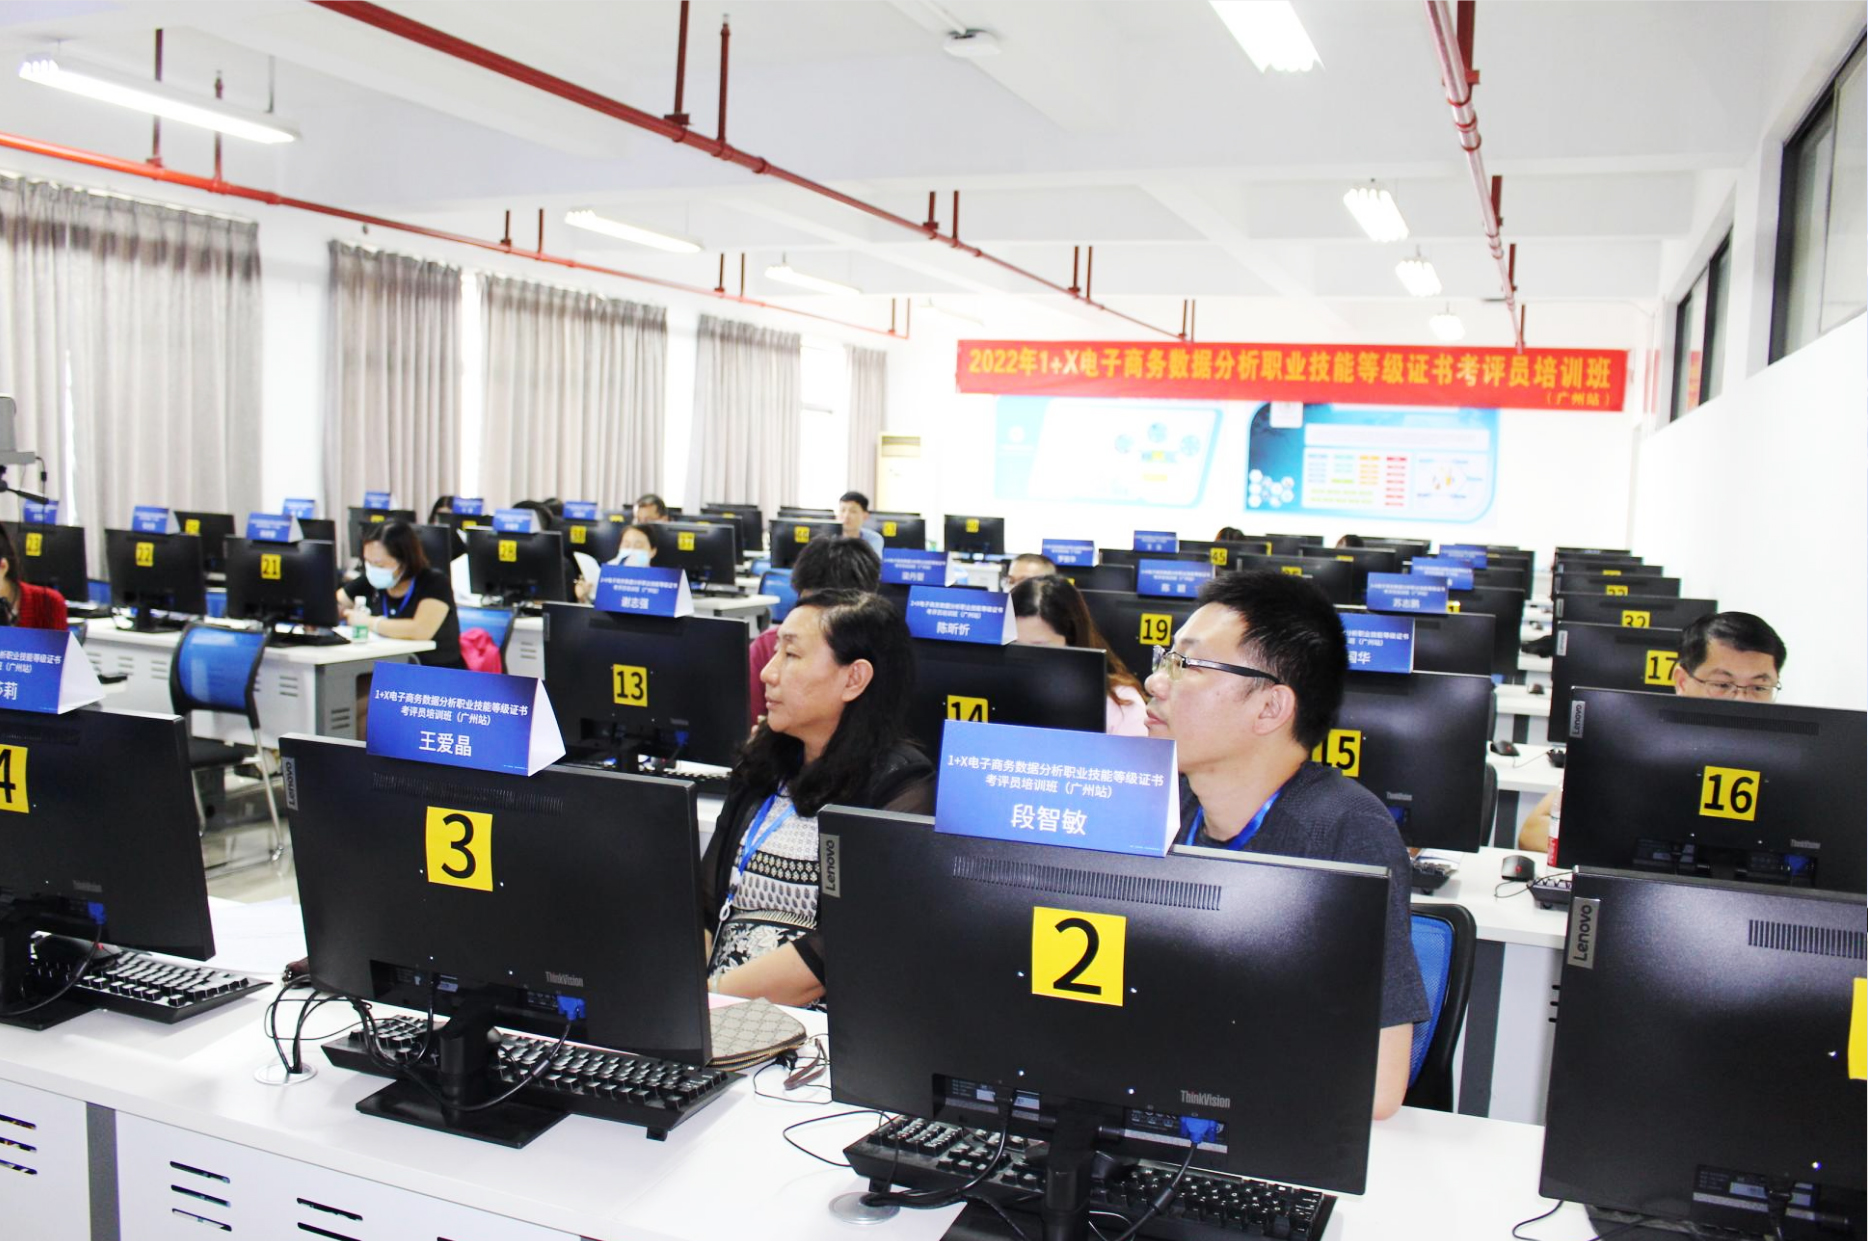 2022年1+X电子商务数据分析广州场考评员培训圆满结束，暑期师资培优全面启动<